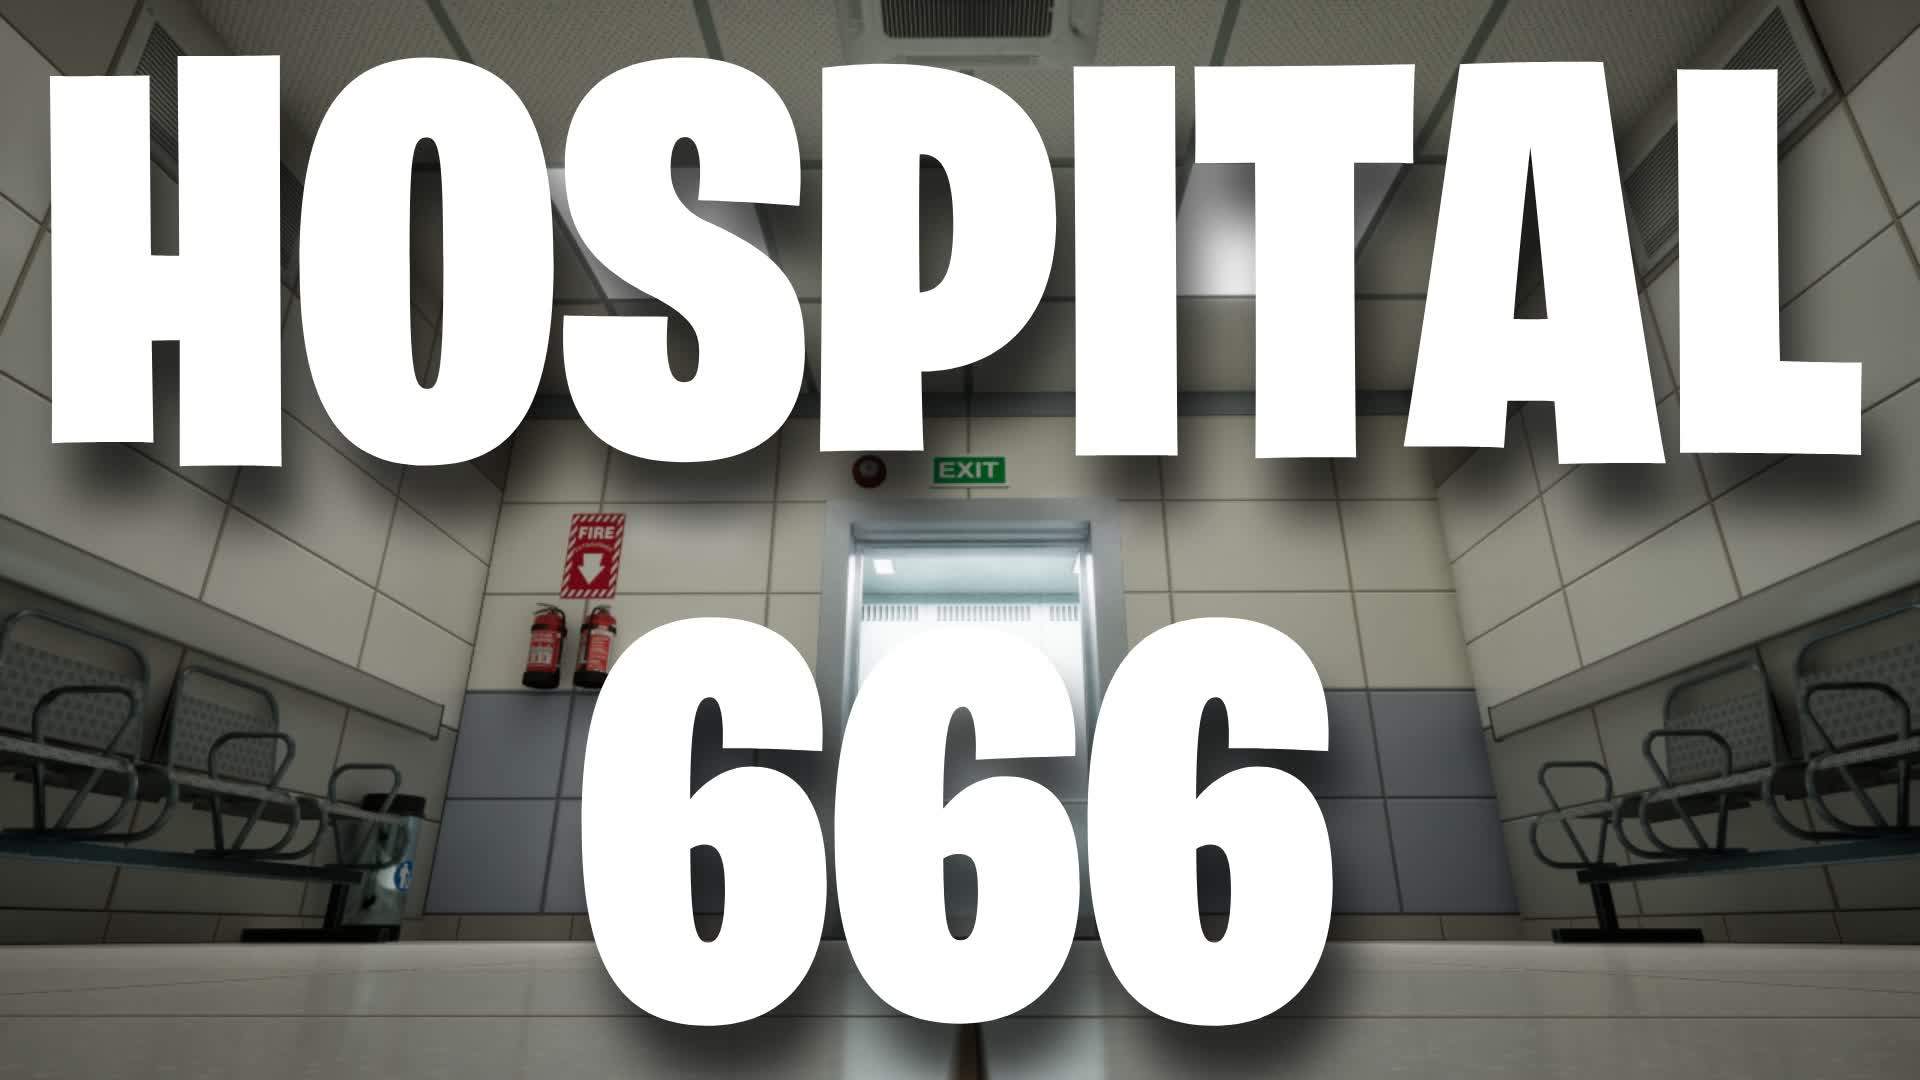 HOSPITAL 666 FORTNITE